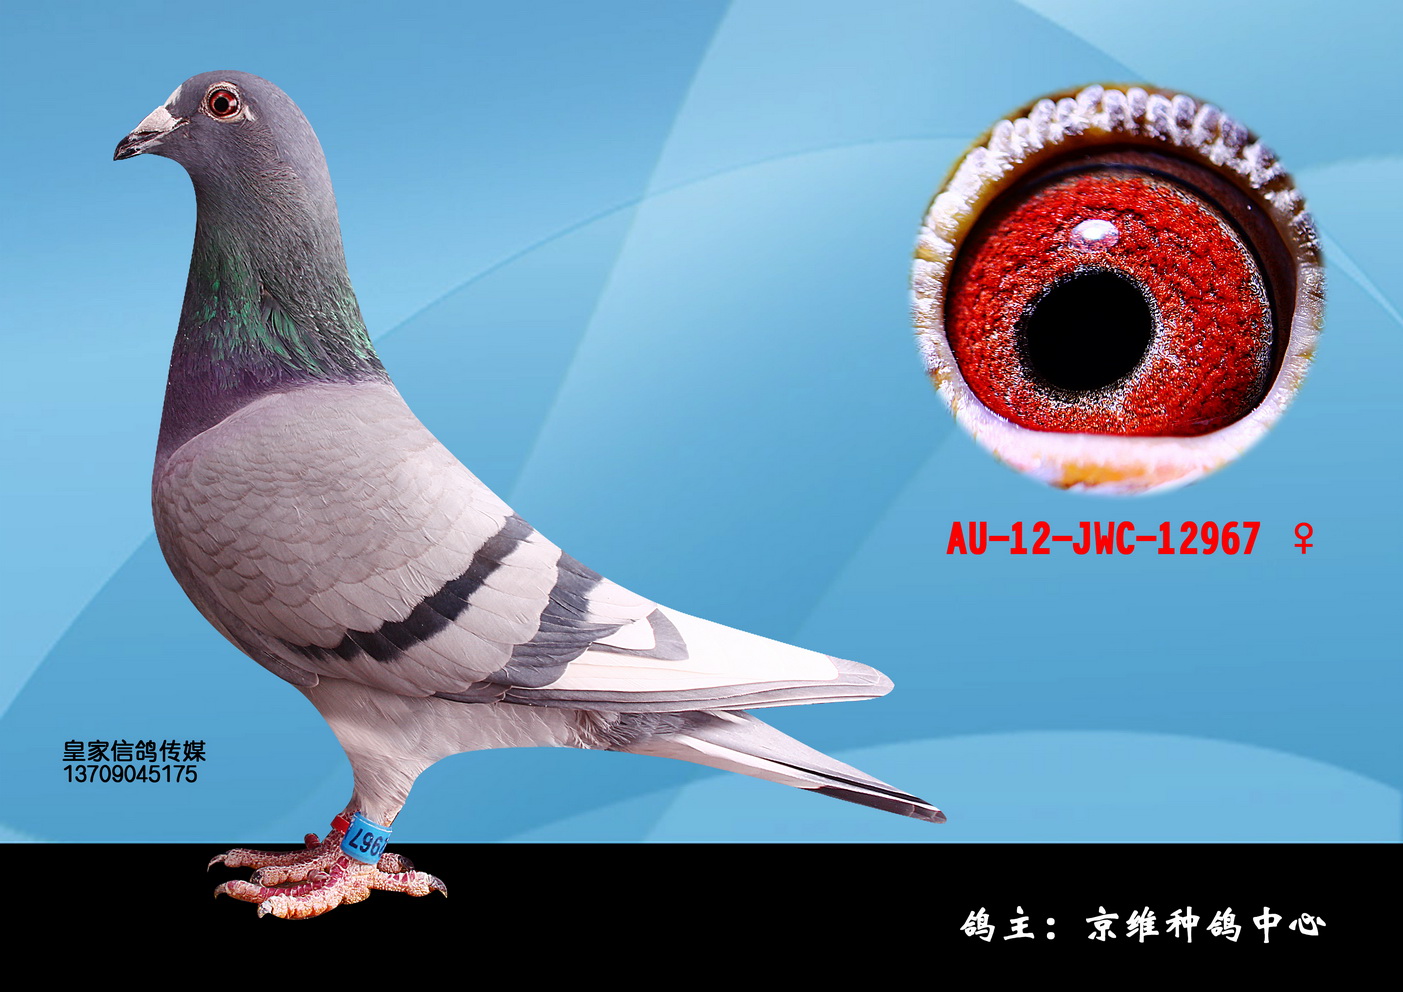 1100 元 拍卖状态 拍卖结束 商家名称 北京京维种鸽养殖